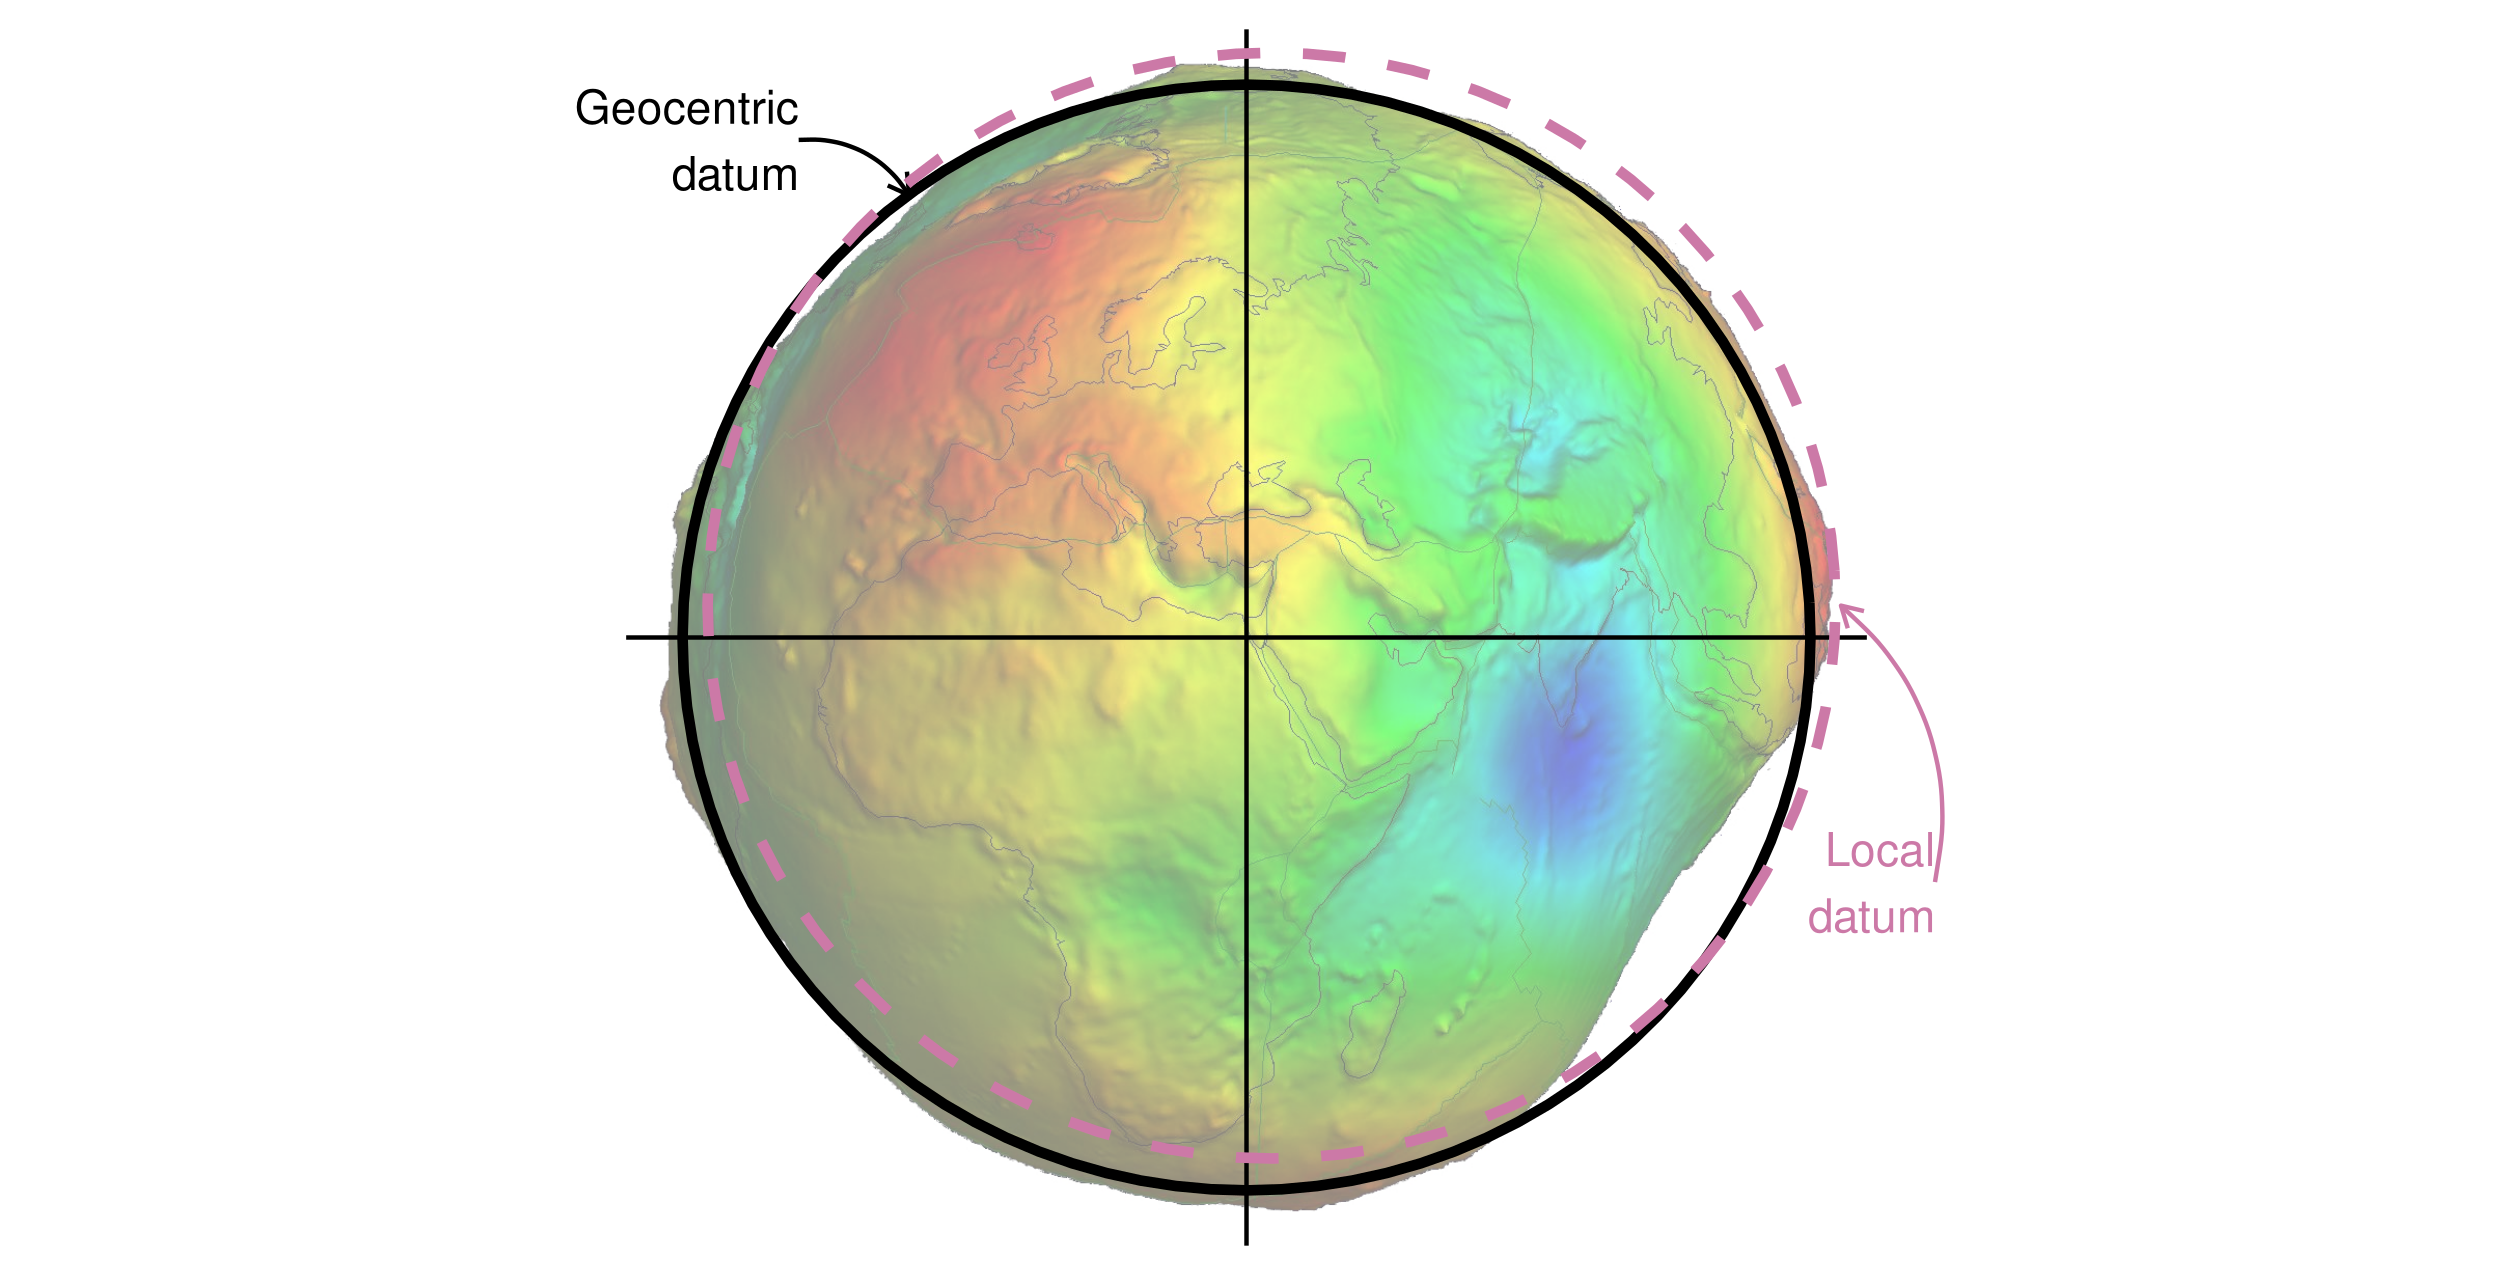 ジオイドの上に表示された地心座標系およびローカル測地系データ (フォールスカラーと、スケールファクター1万による垂直方向の誇張)。ジオイドの画像は Ince et al. (2019) の作品から流用したものである。